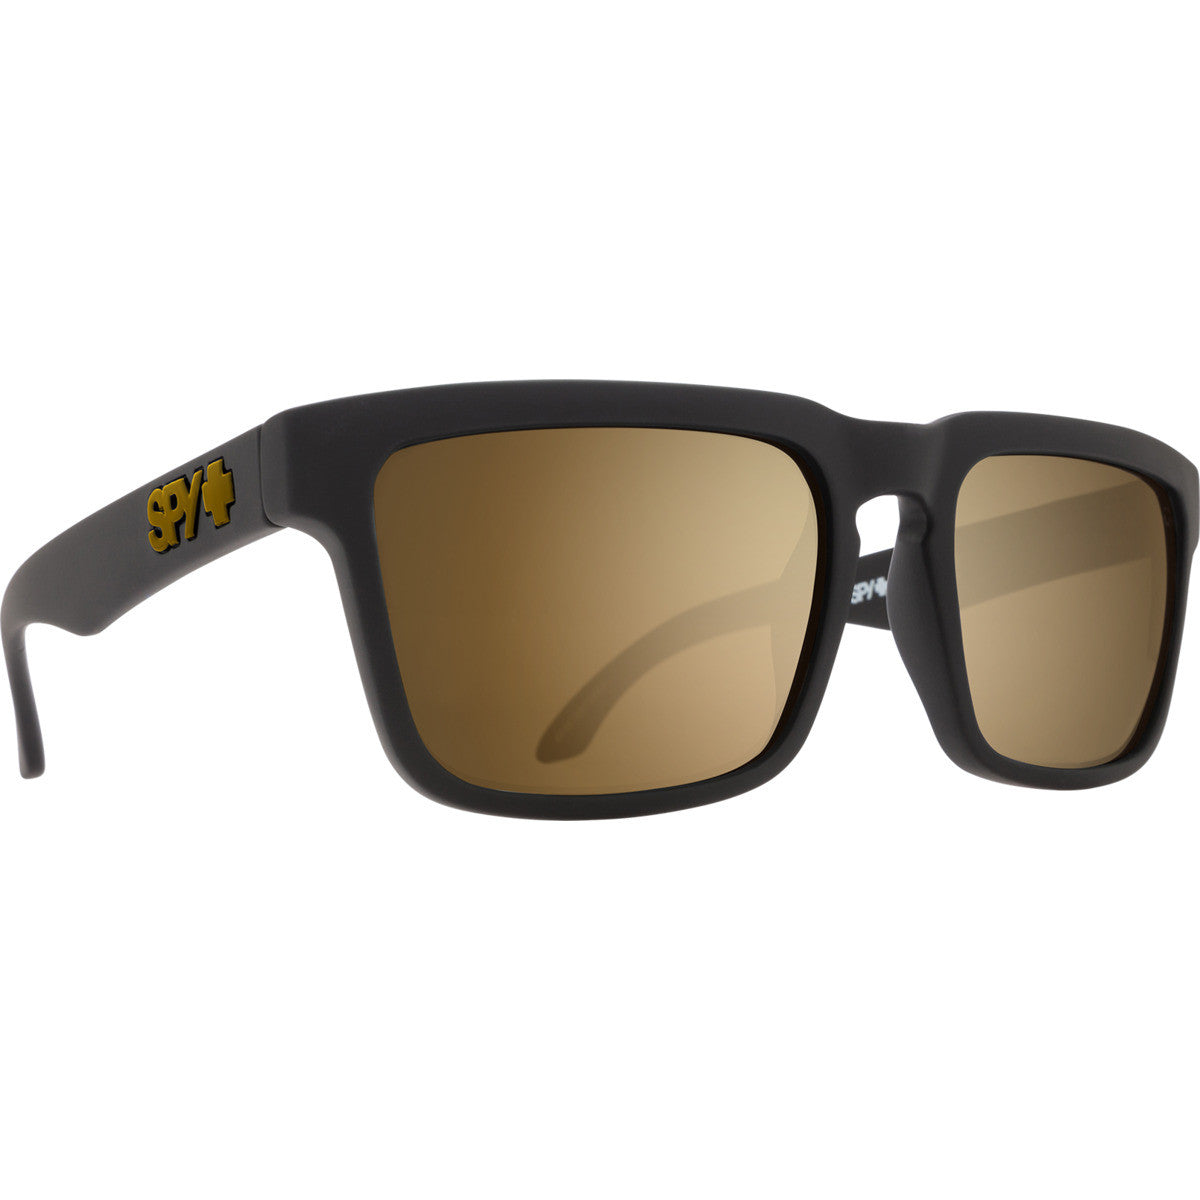 Spy Helm Low Bridge Fit Sunglasses  Soft Matte Black Medium-Large M-L 54-61